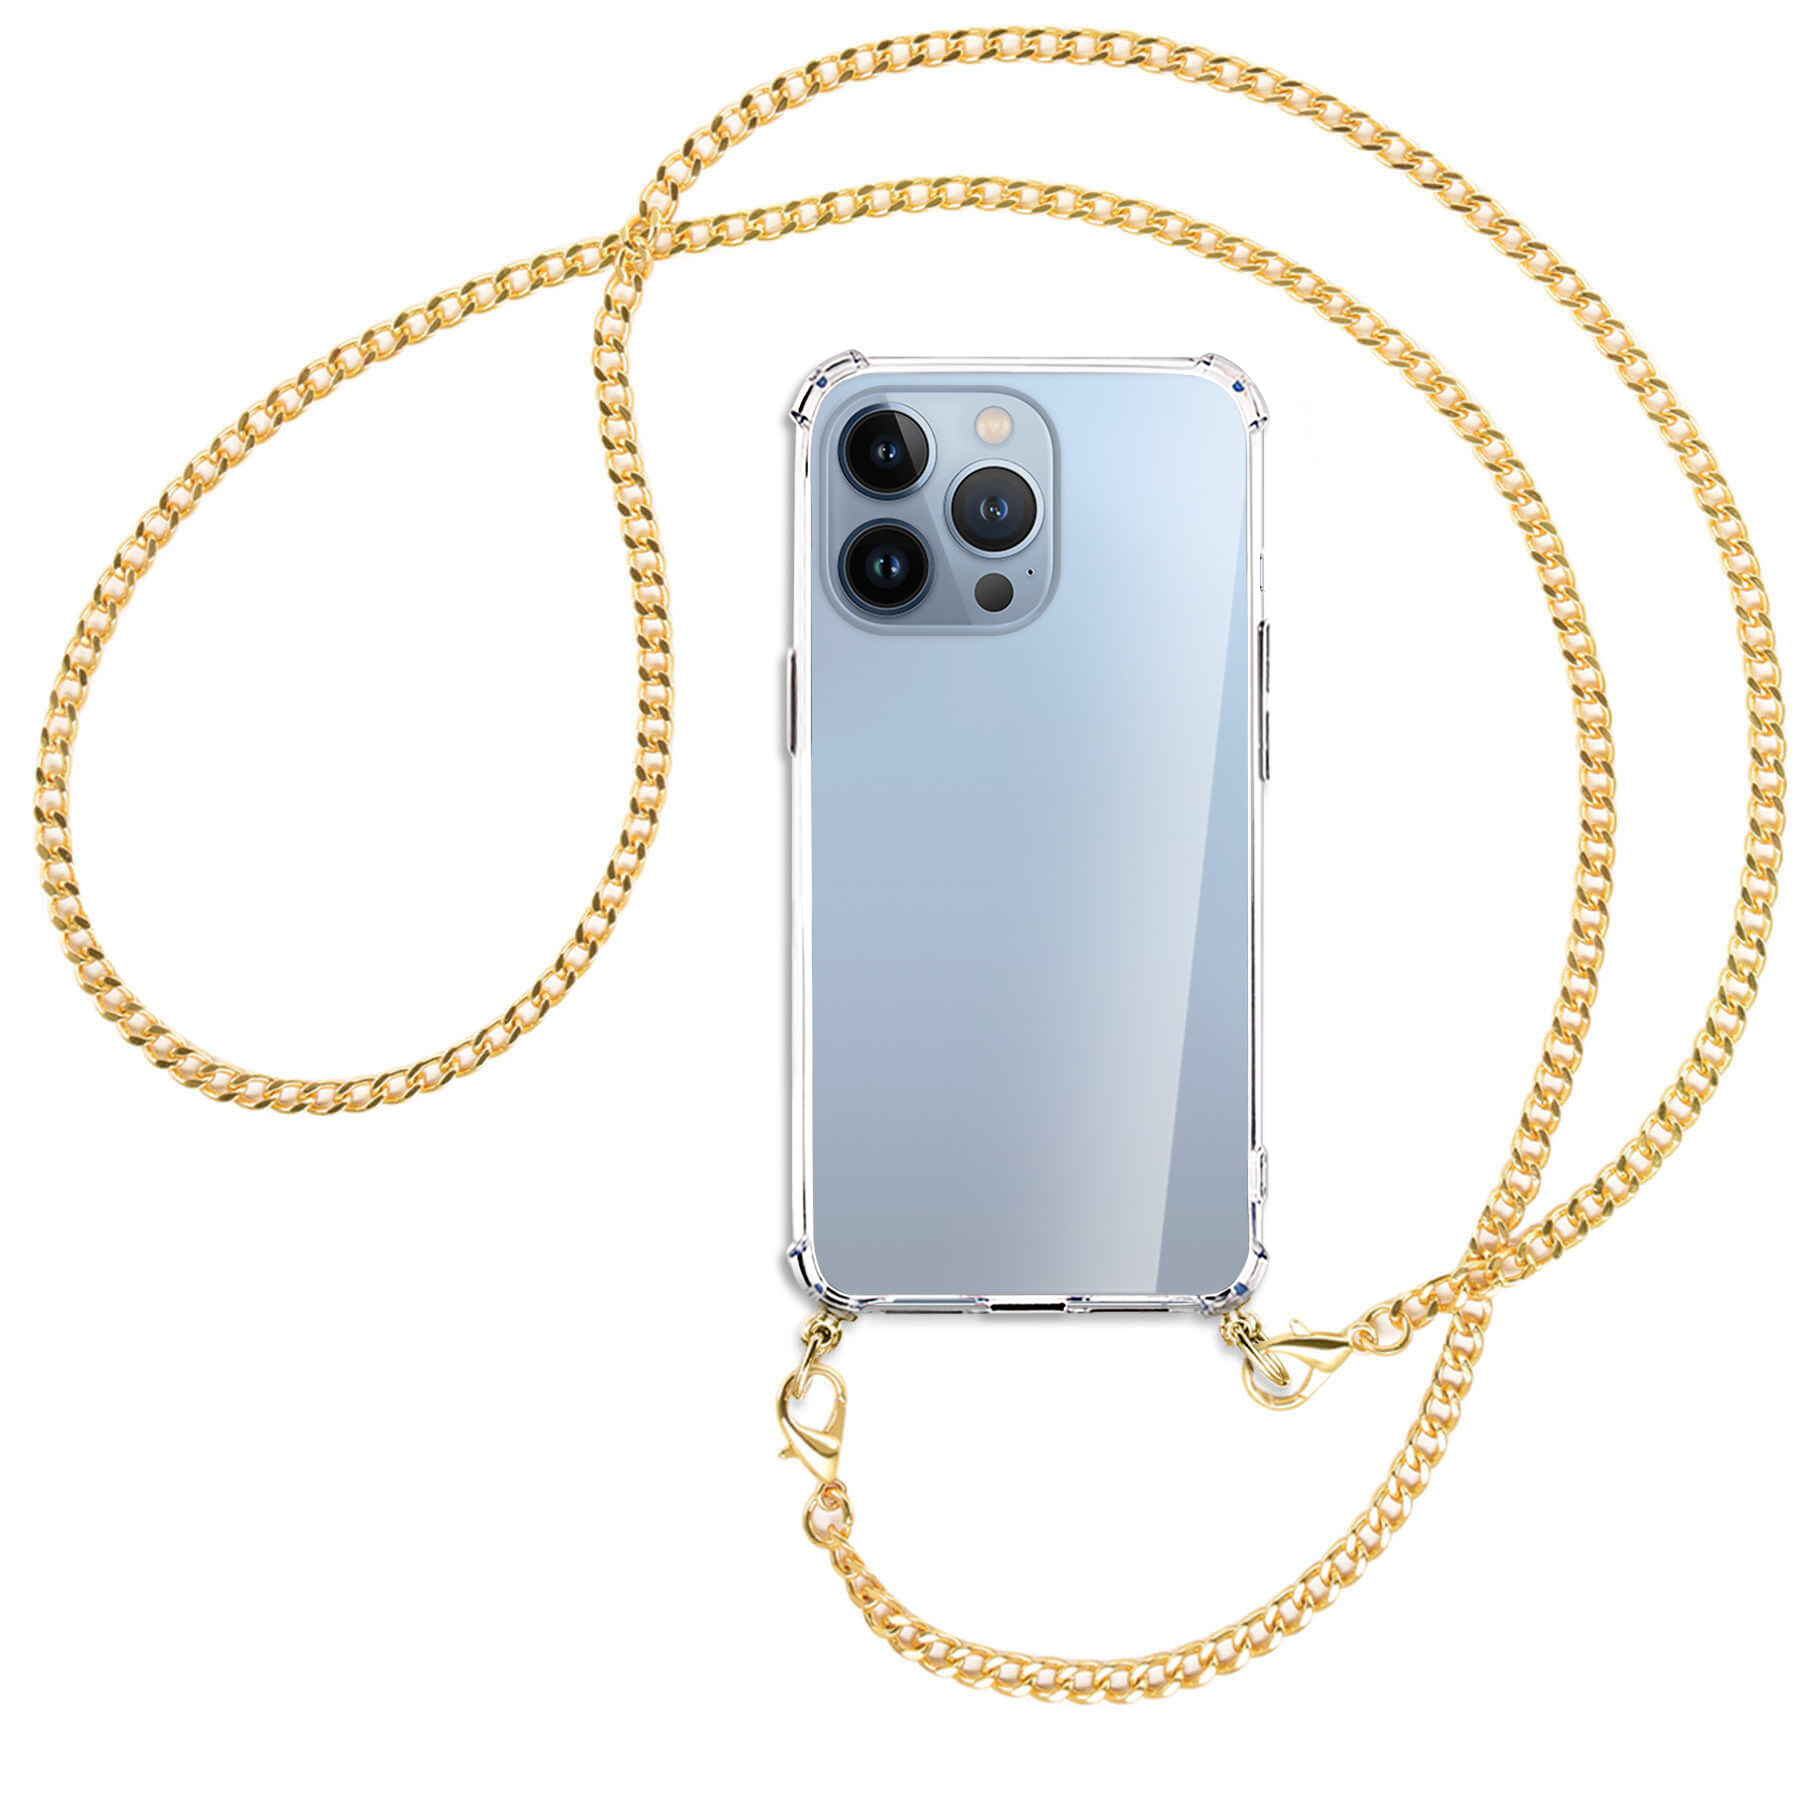 13 MORE Pro, mit (goldfarben) Metallkette, ENERGY Backcover, Kette iPhone Umhänge-Hülle Apple, MTB